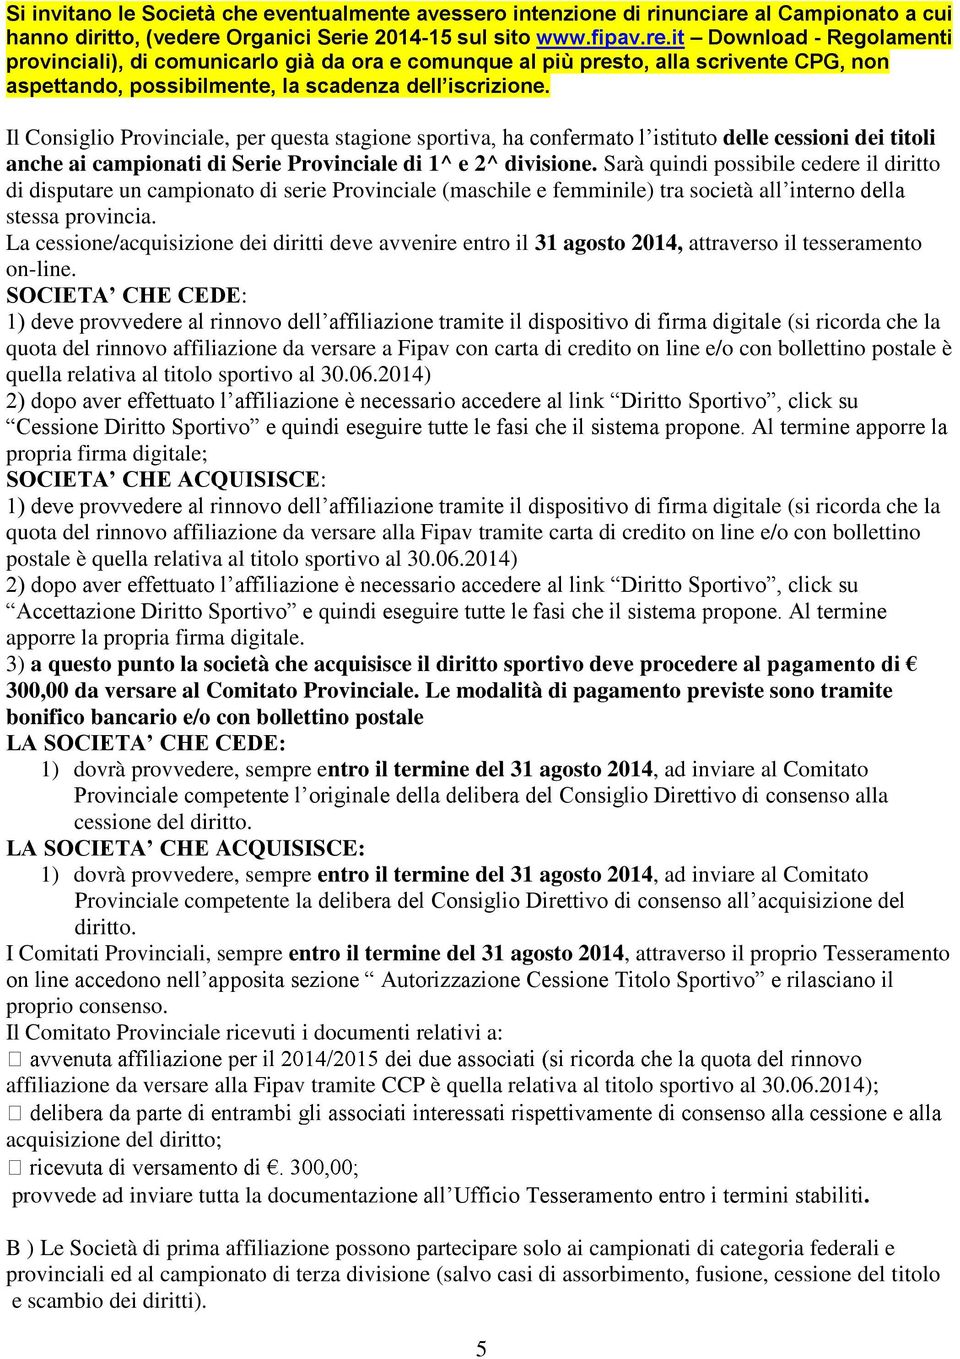 Organici Serie 2014-15 sul sito www.fipav.re.